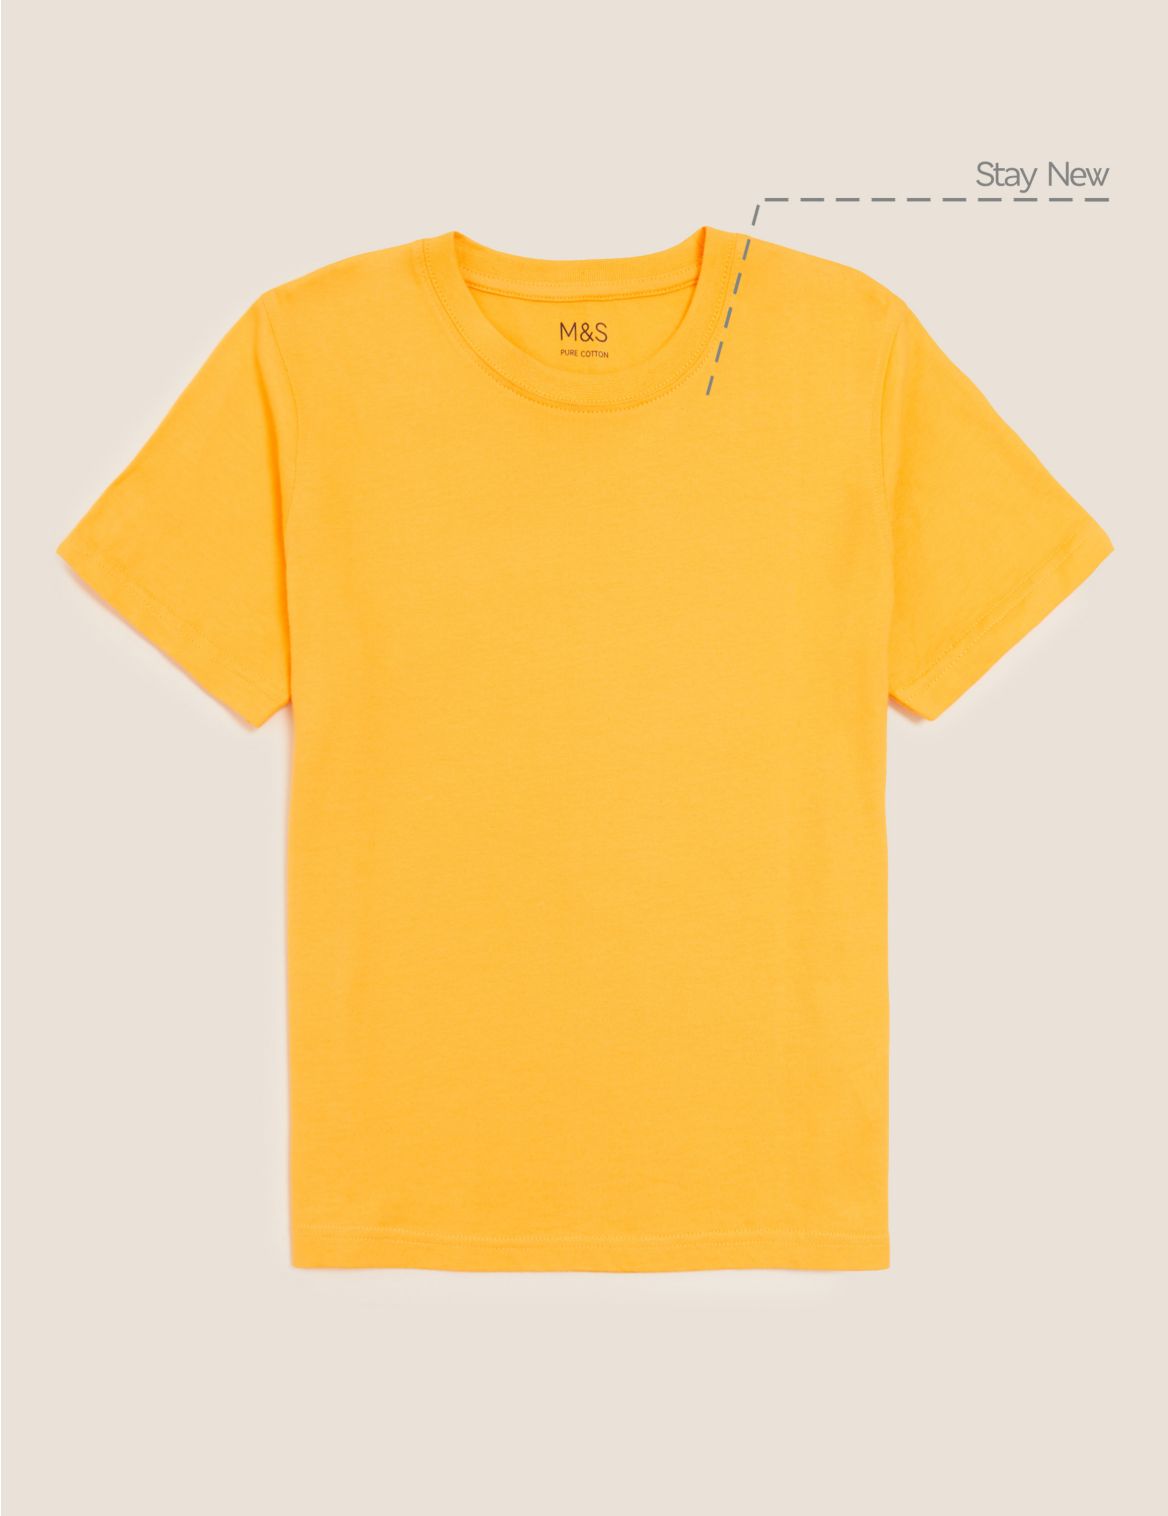 Unisex Pure Cotton T-Shirt gold